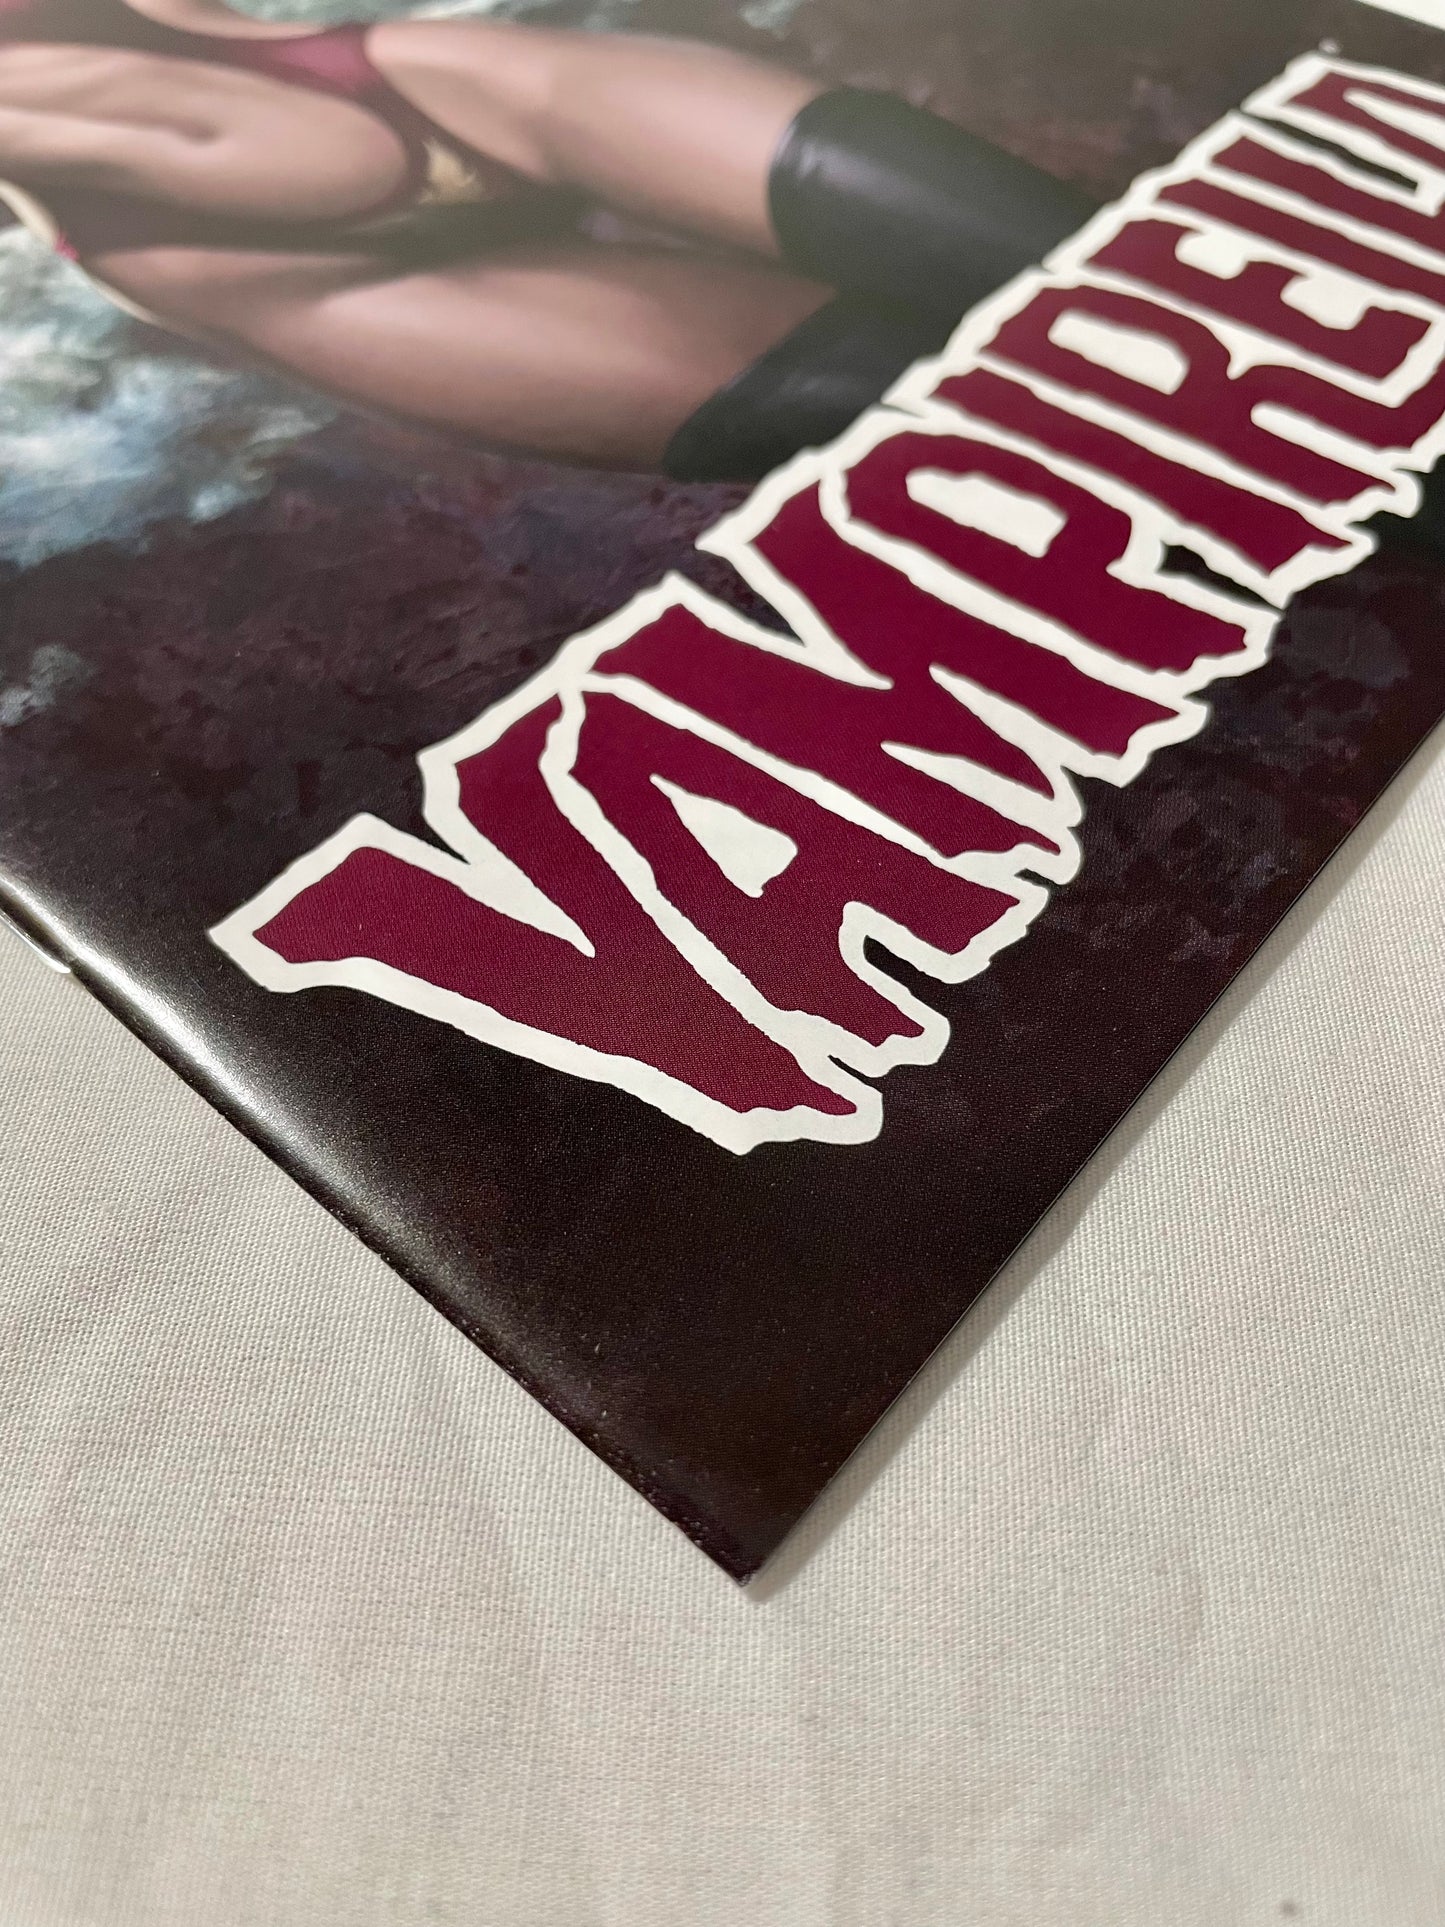 Dynamite Vampirella #4 (2019)